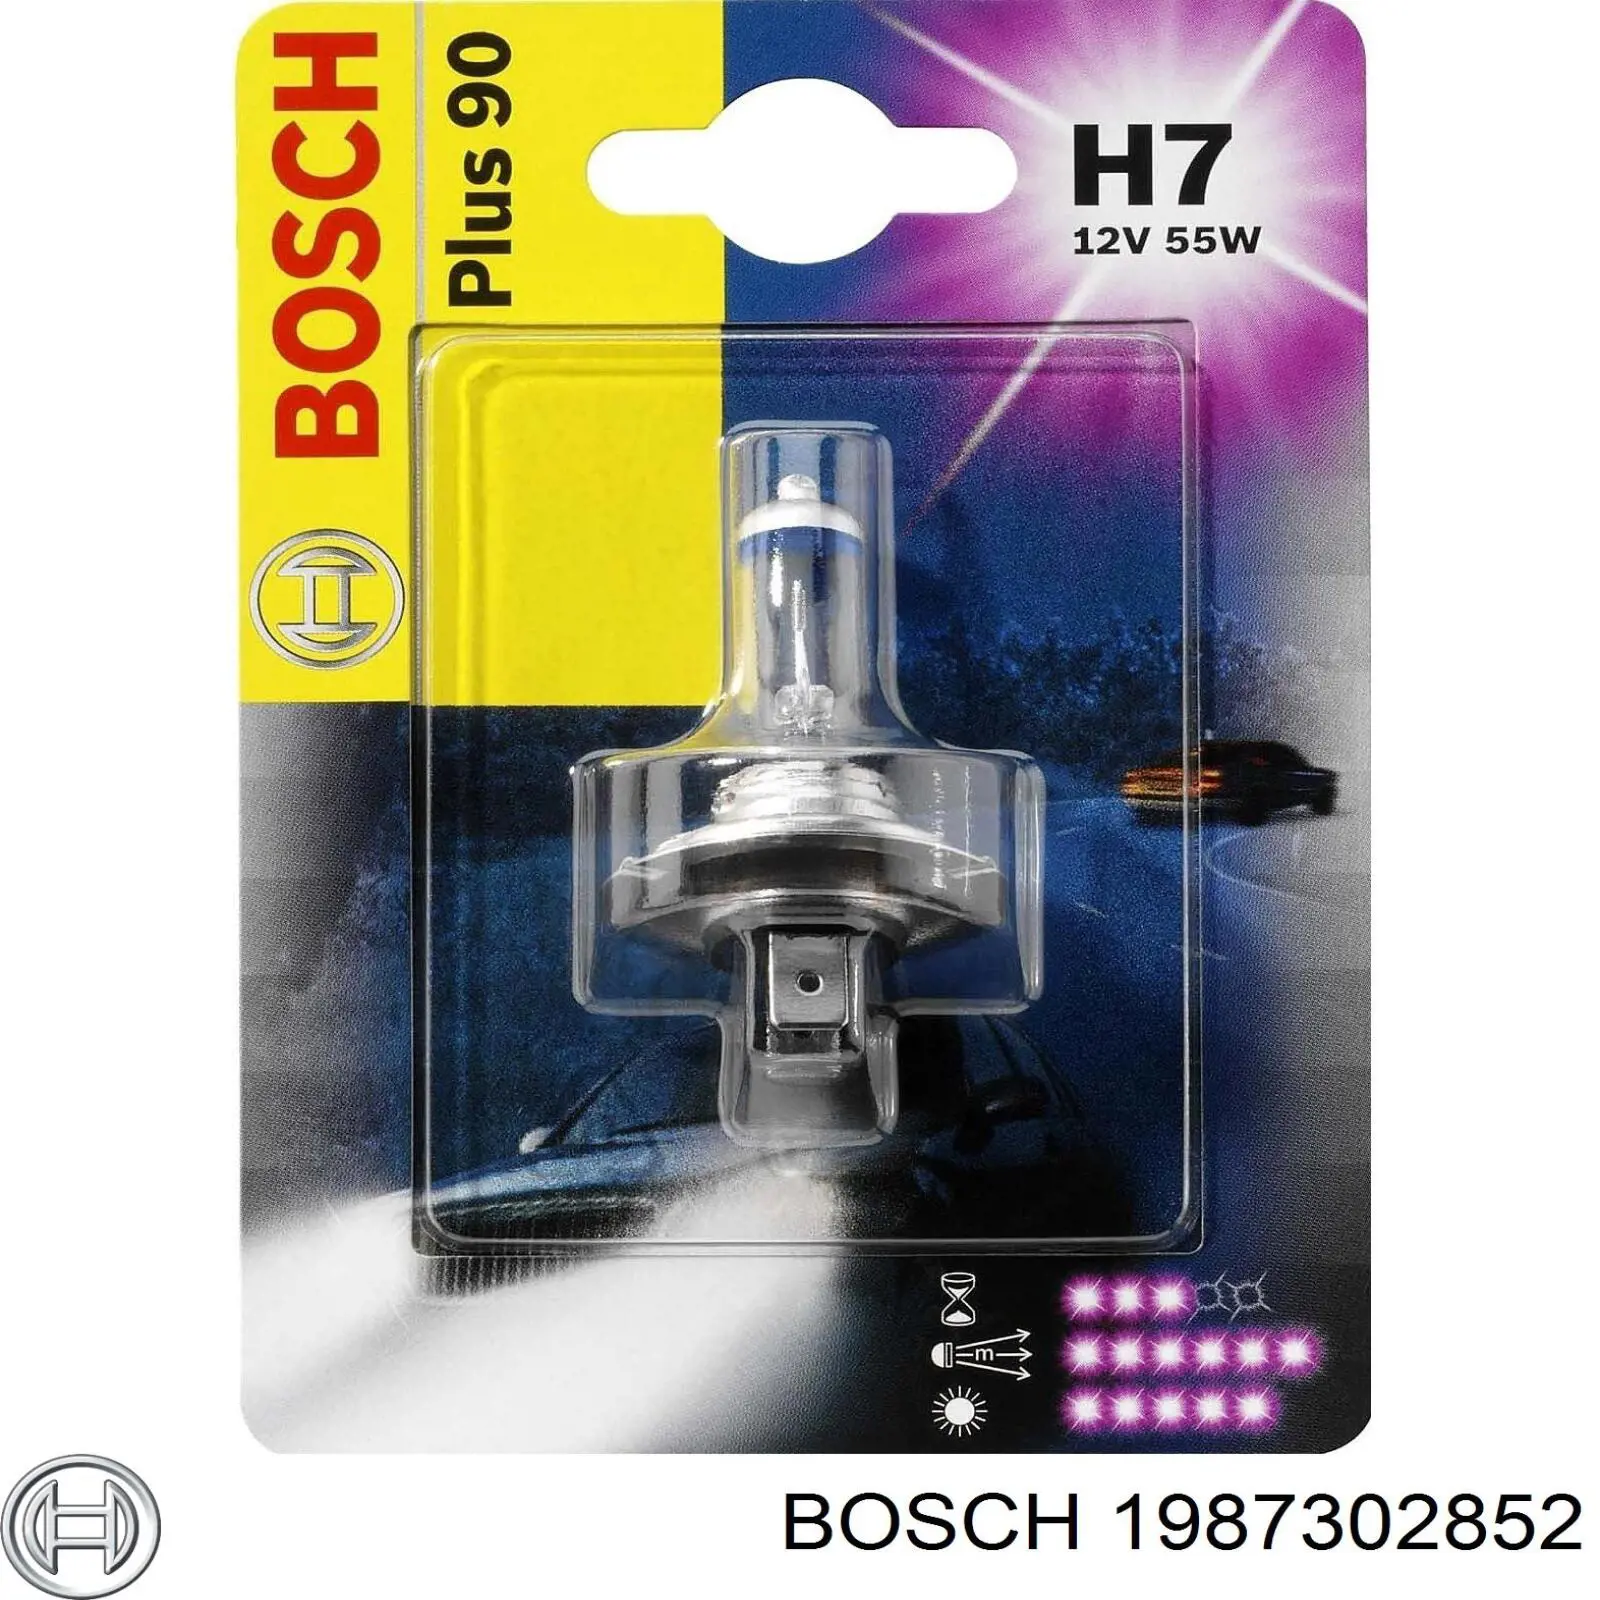 1987302852 Bosch bombilla de xenon